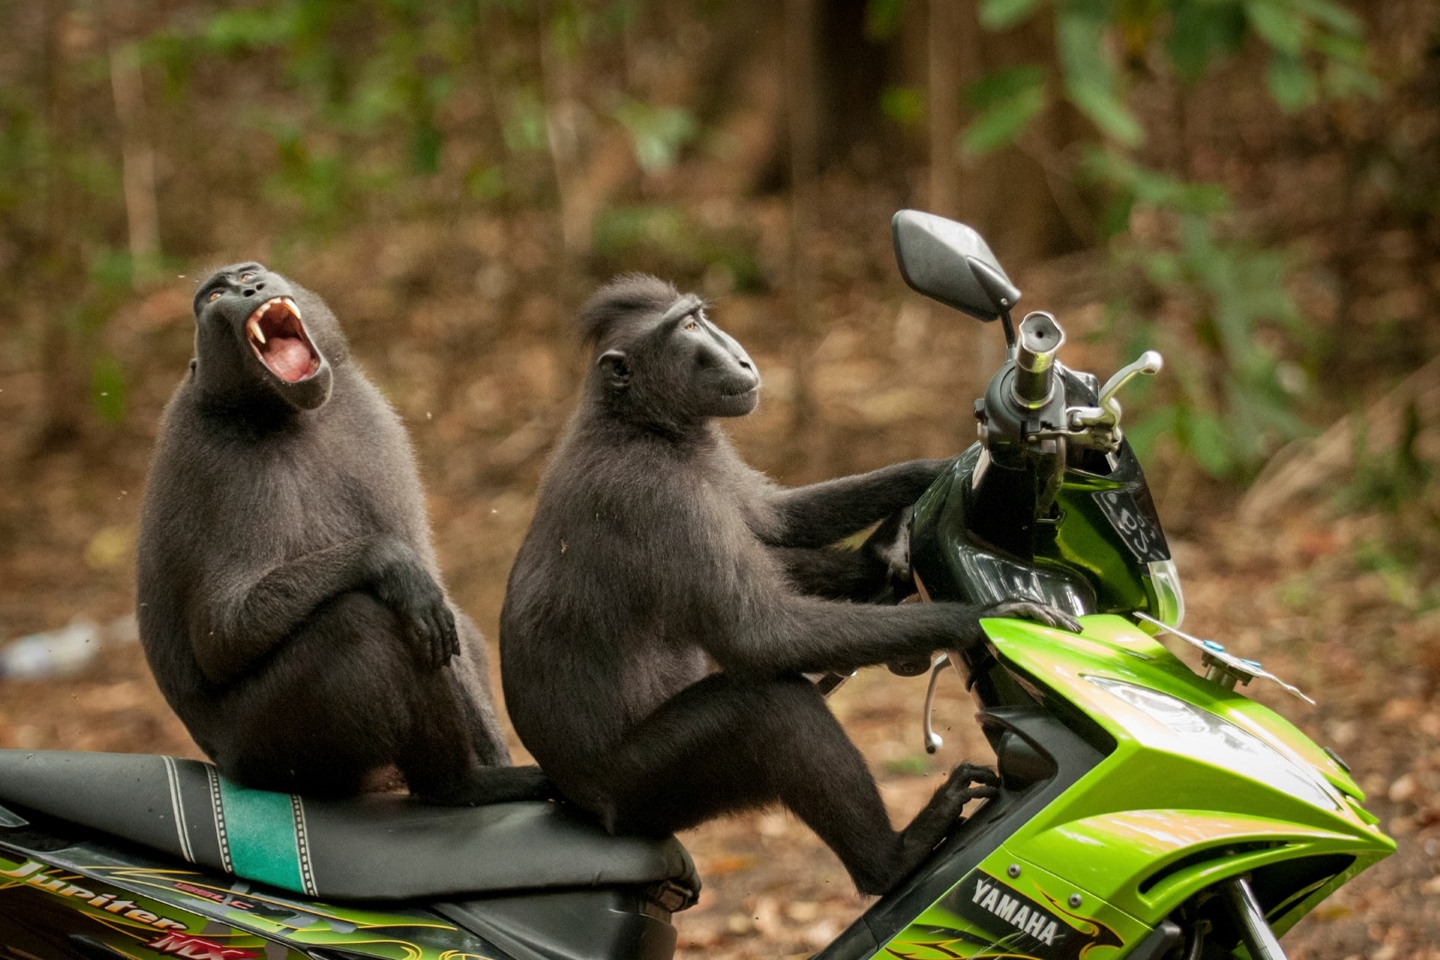 "Дерзкие обезьяны - Великий побег". Кэти Лавек Фостер была высоко оценена за ее веселый снимок некоторых обезьян, сидящих на мопеде в Северном Сулавеси, Индонезия. Фото: Katy Laveck Foster